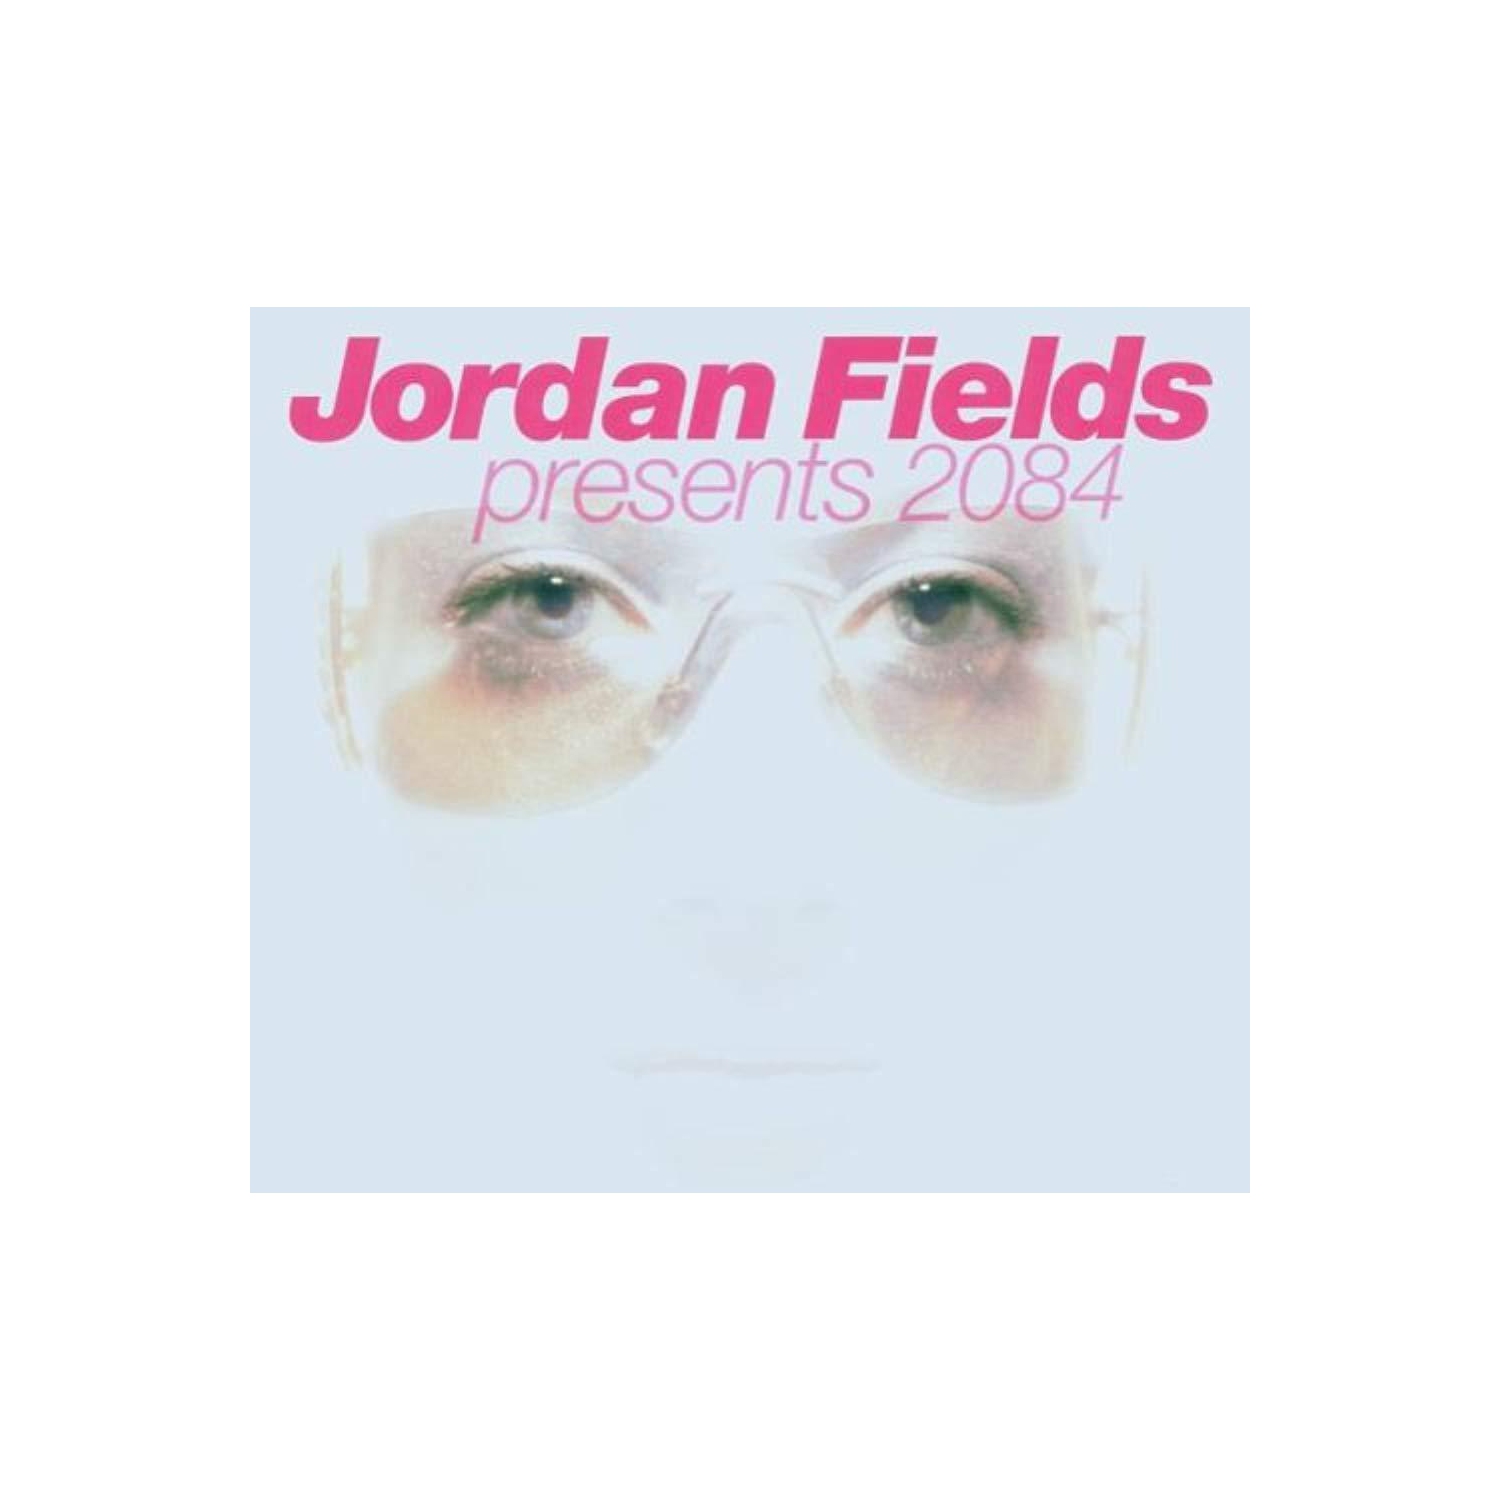 2084 [Audio CD] Fields, Jordan